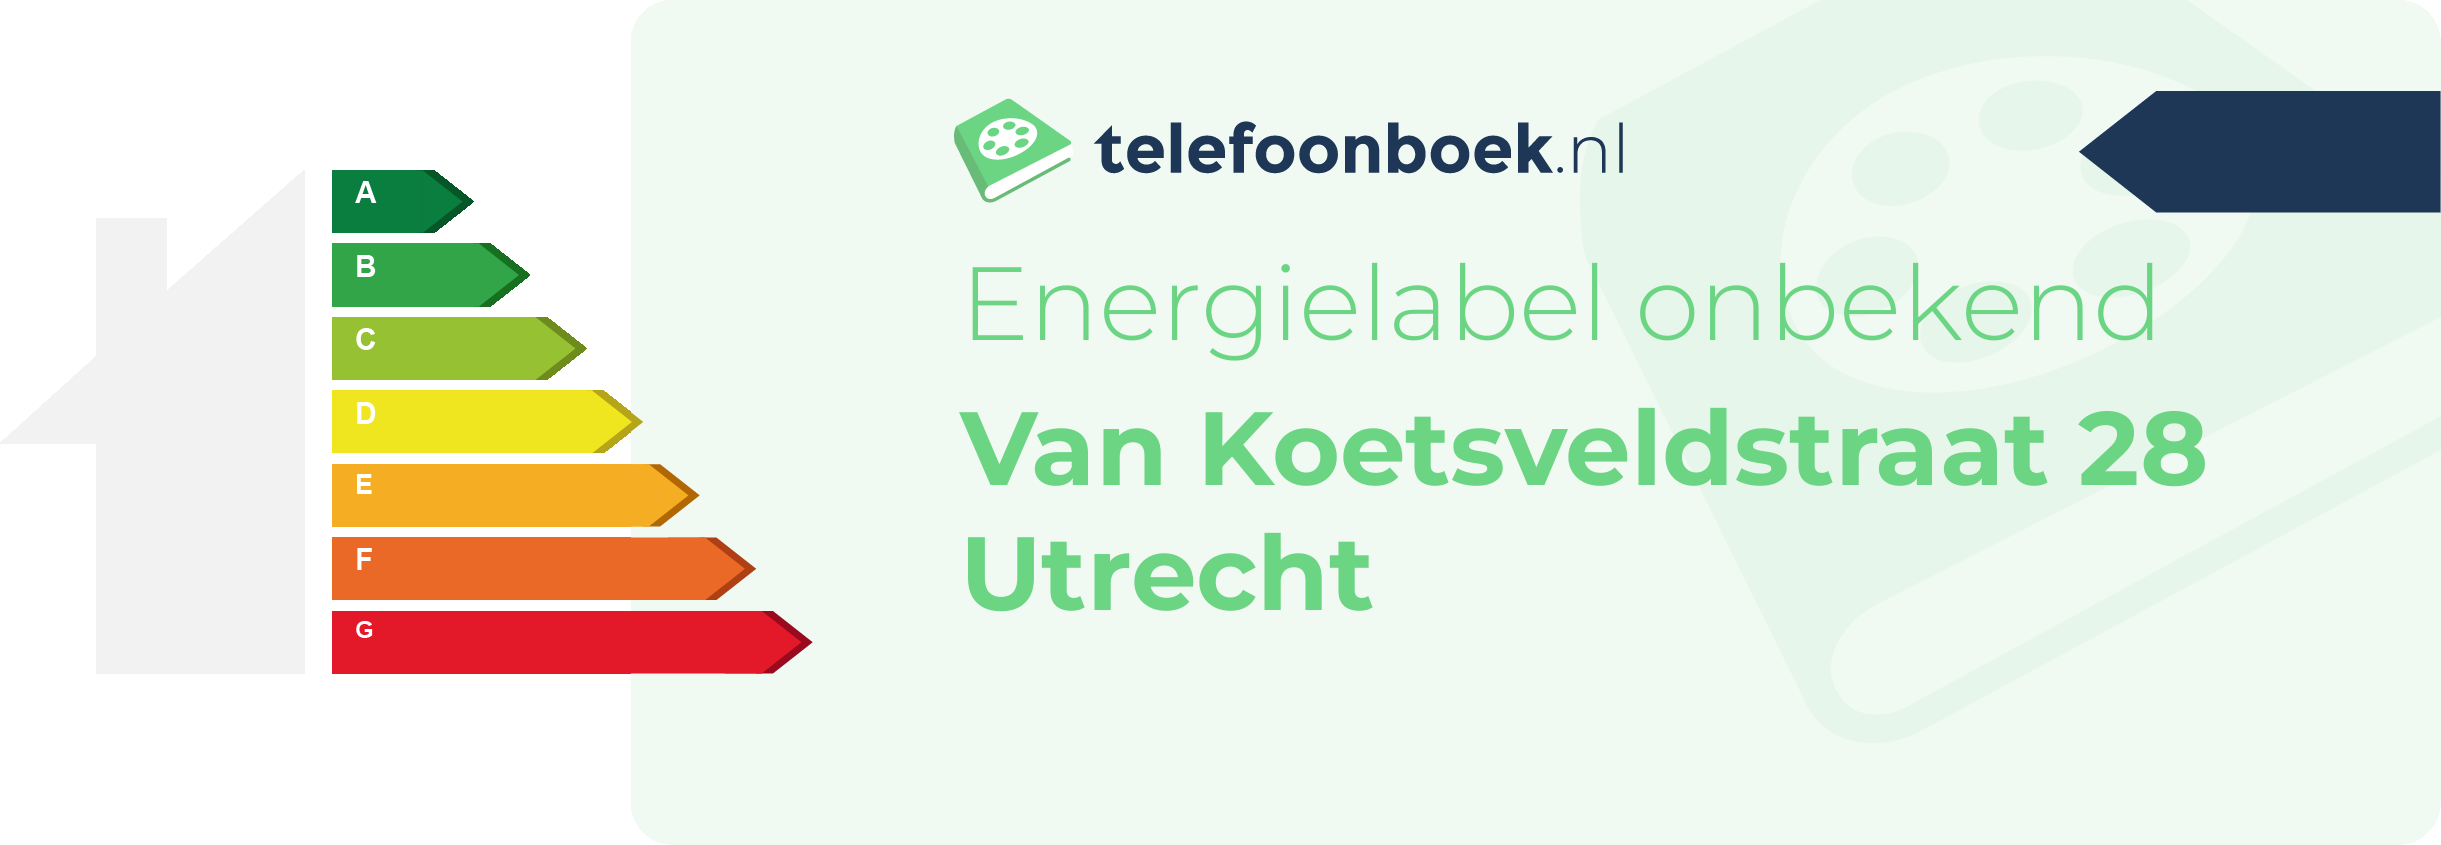 Energielabel Van Koetsveldstraat 28 Utrecht